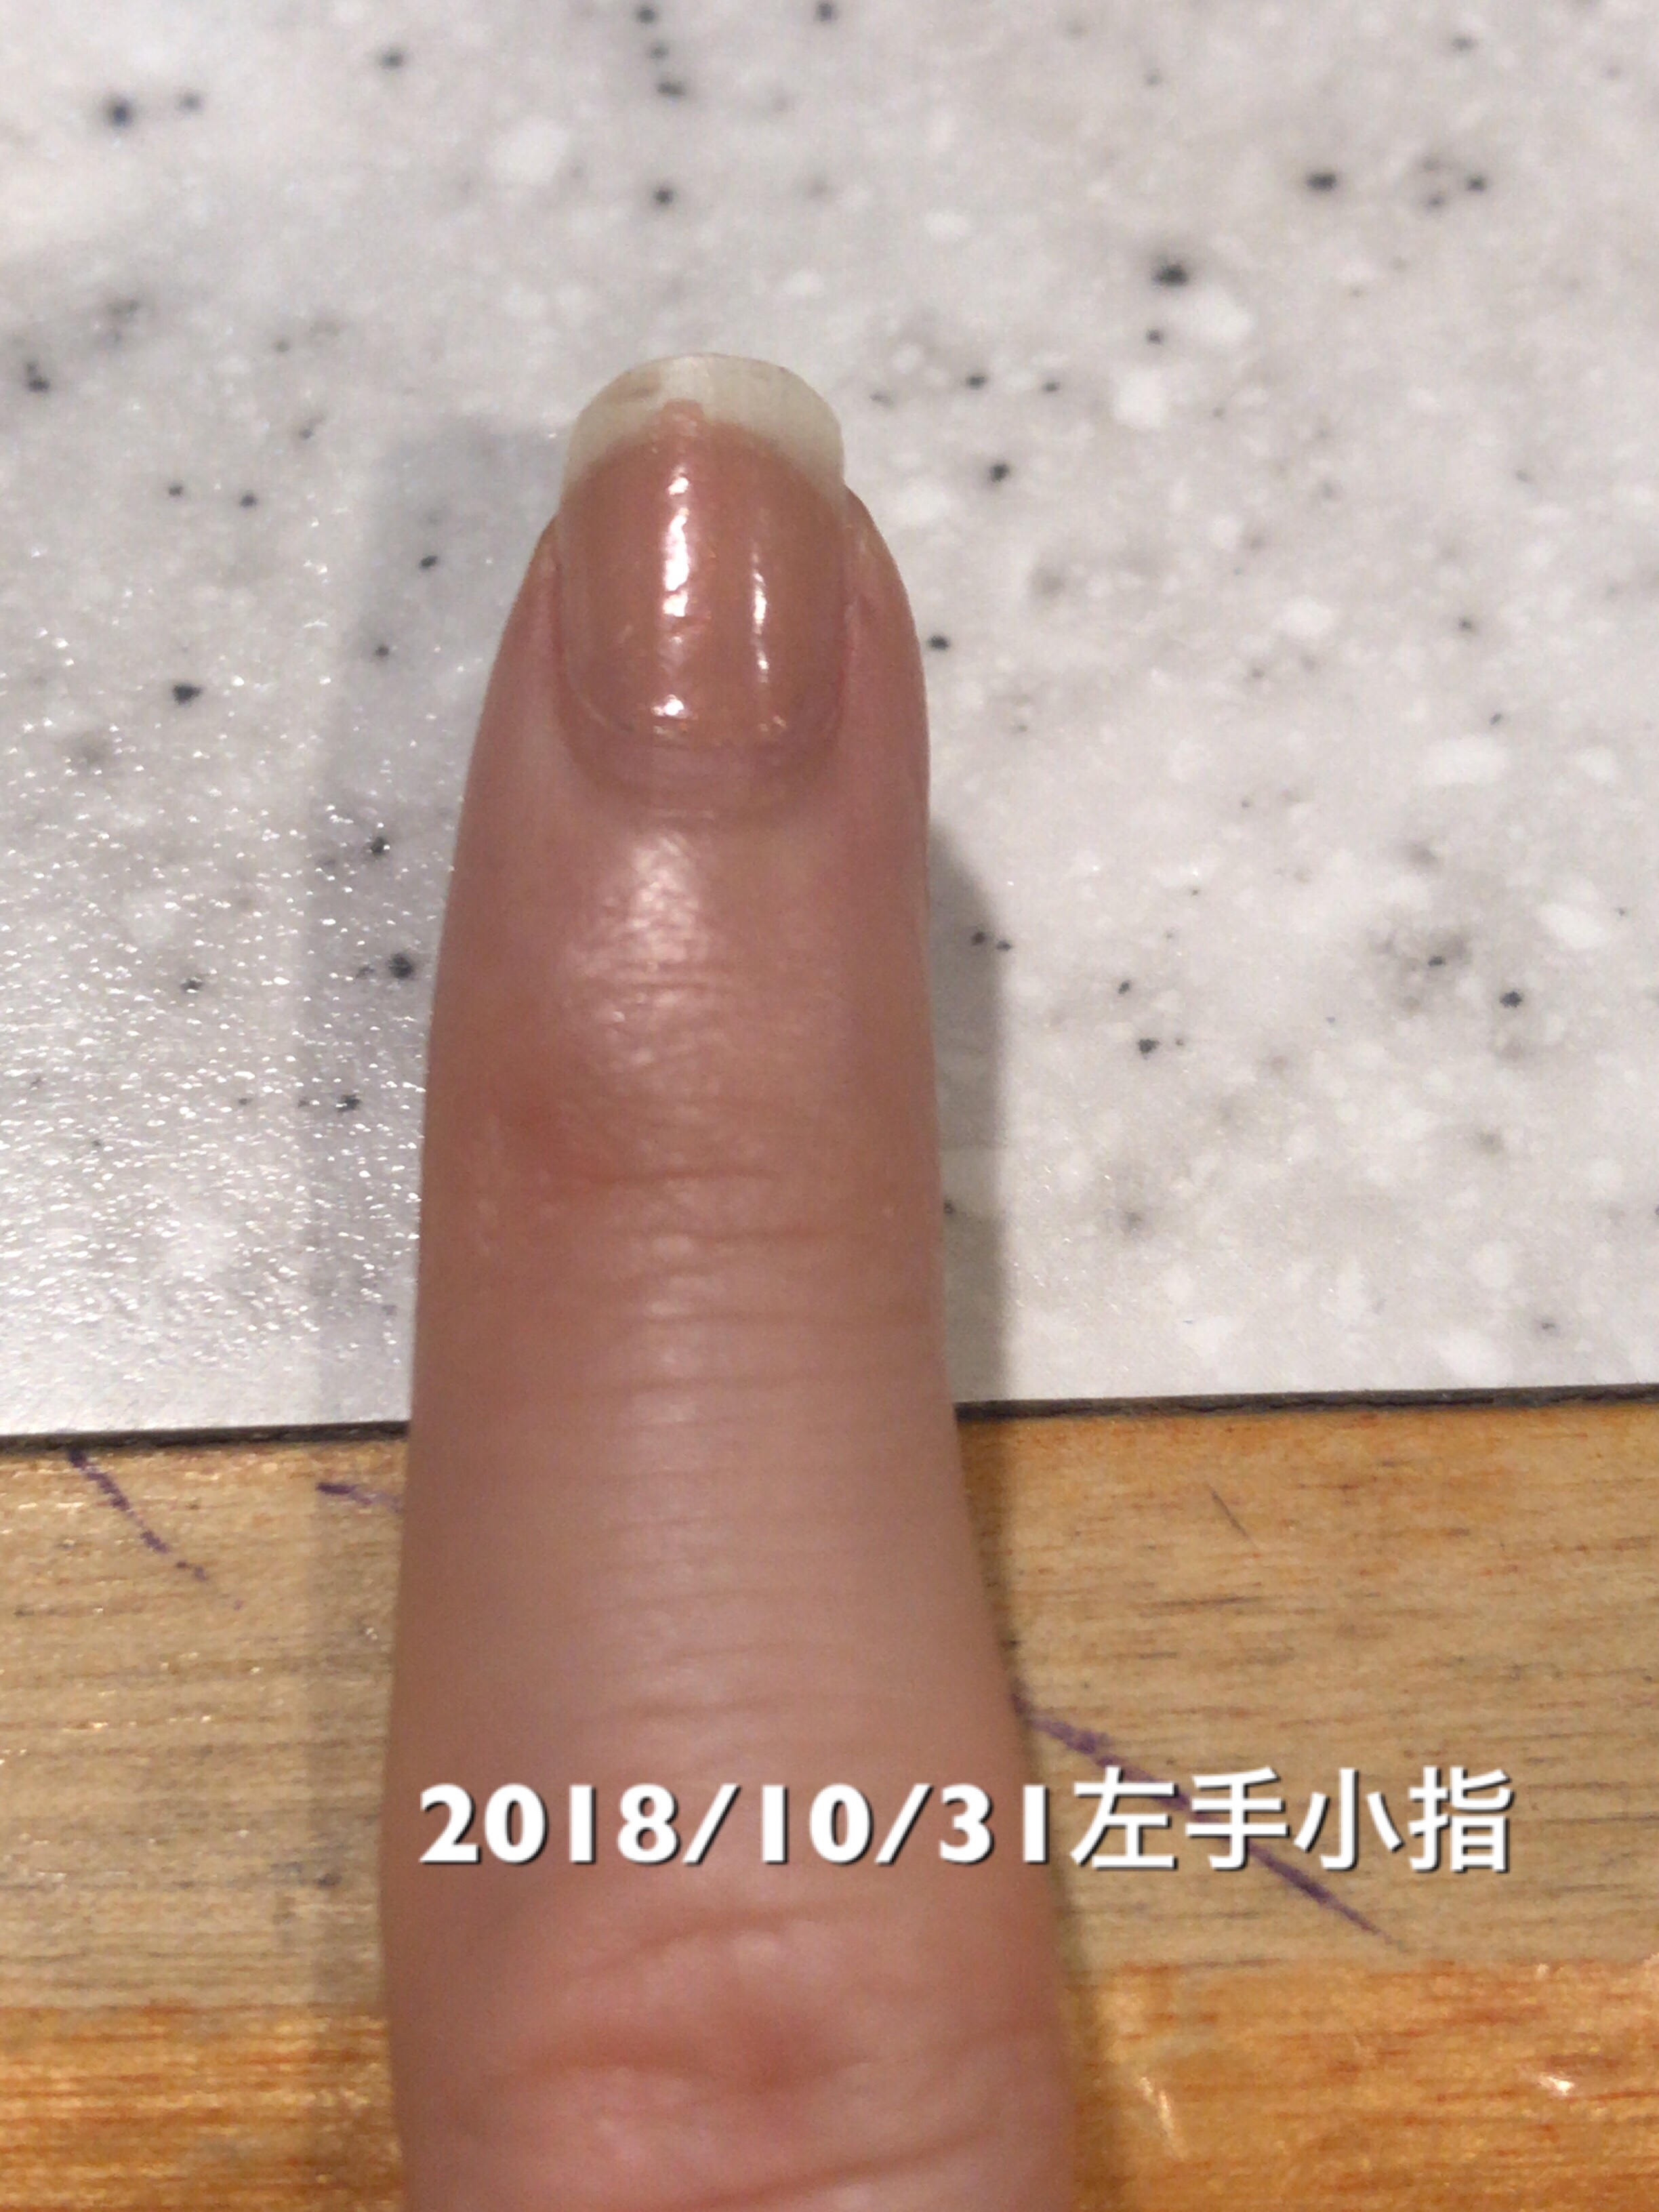 小指は数値面では10日前と変化なしですが、サイドラインがより一層くっきりしてきたと感じます。マニキュアの落とし残しが映ってしまってますが、マニキュアを塗るとほっそりした爪になってちょっと嬉しいです。という写真